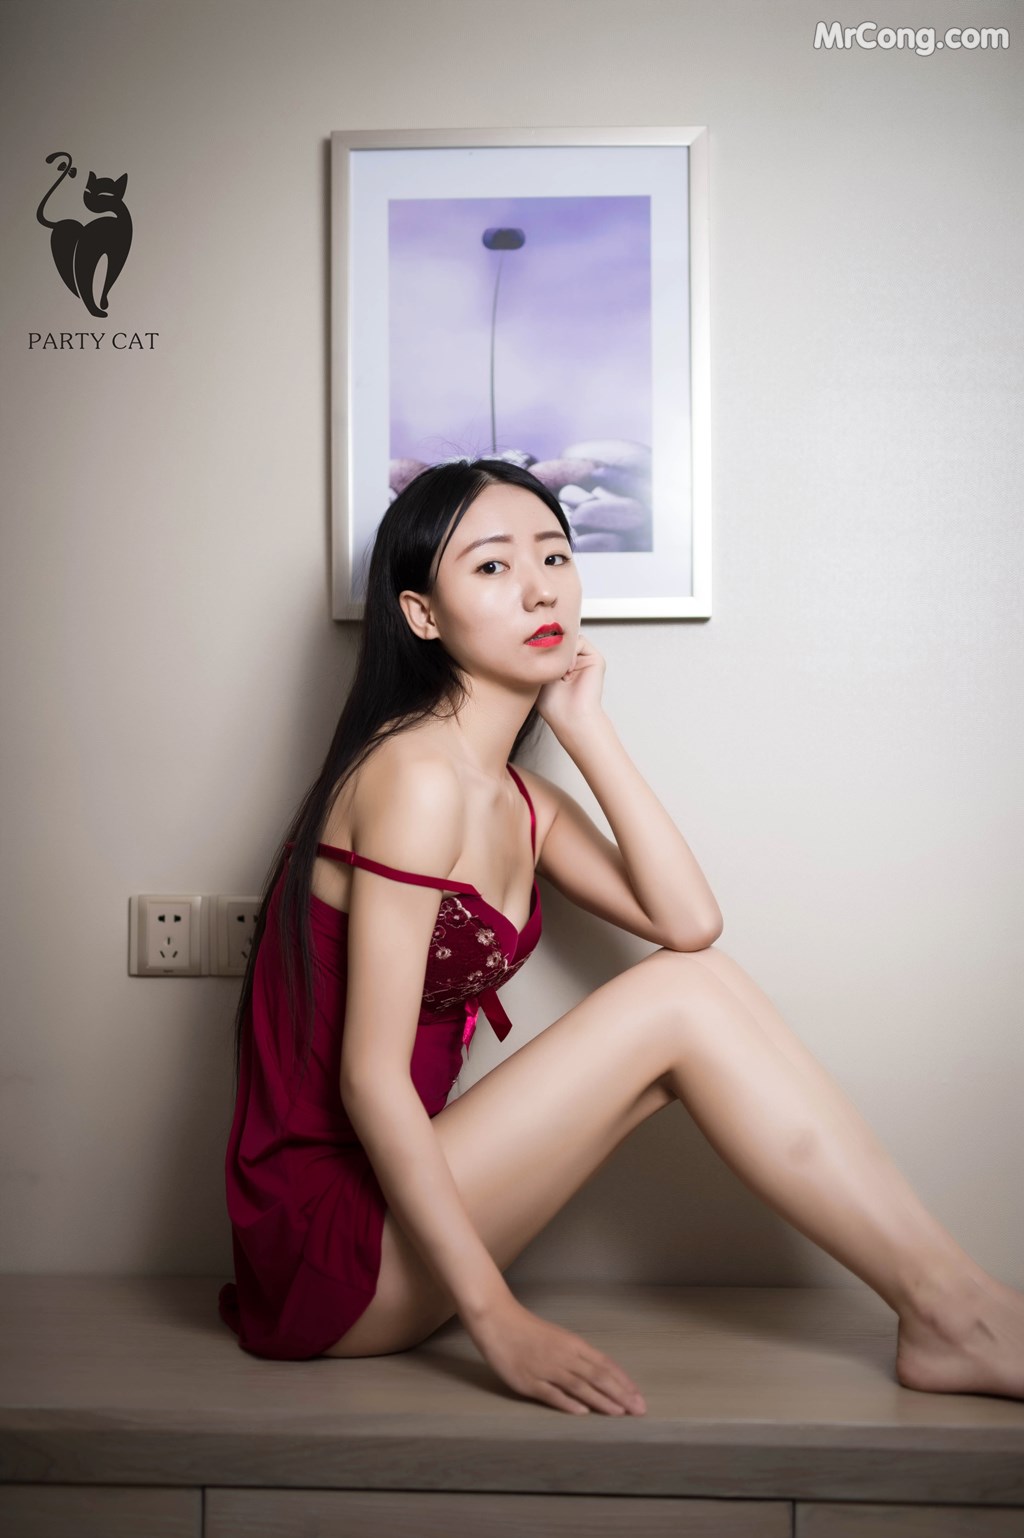 PartyCat Vol.011: Model Qian Qian (倩倩) (46 photos)